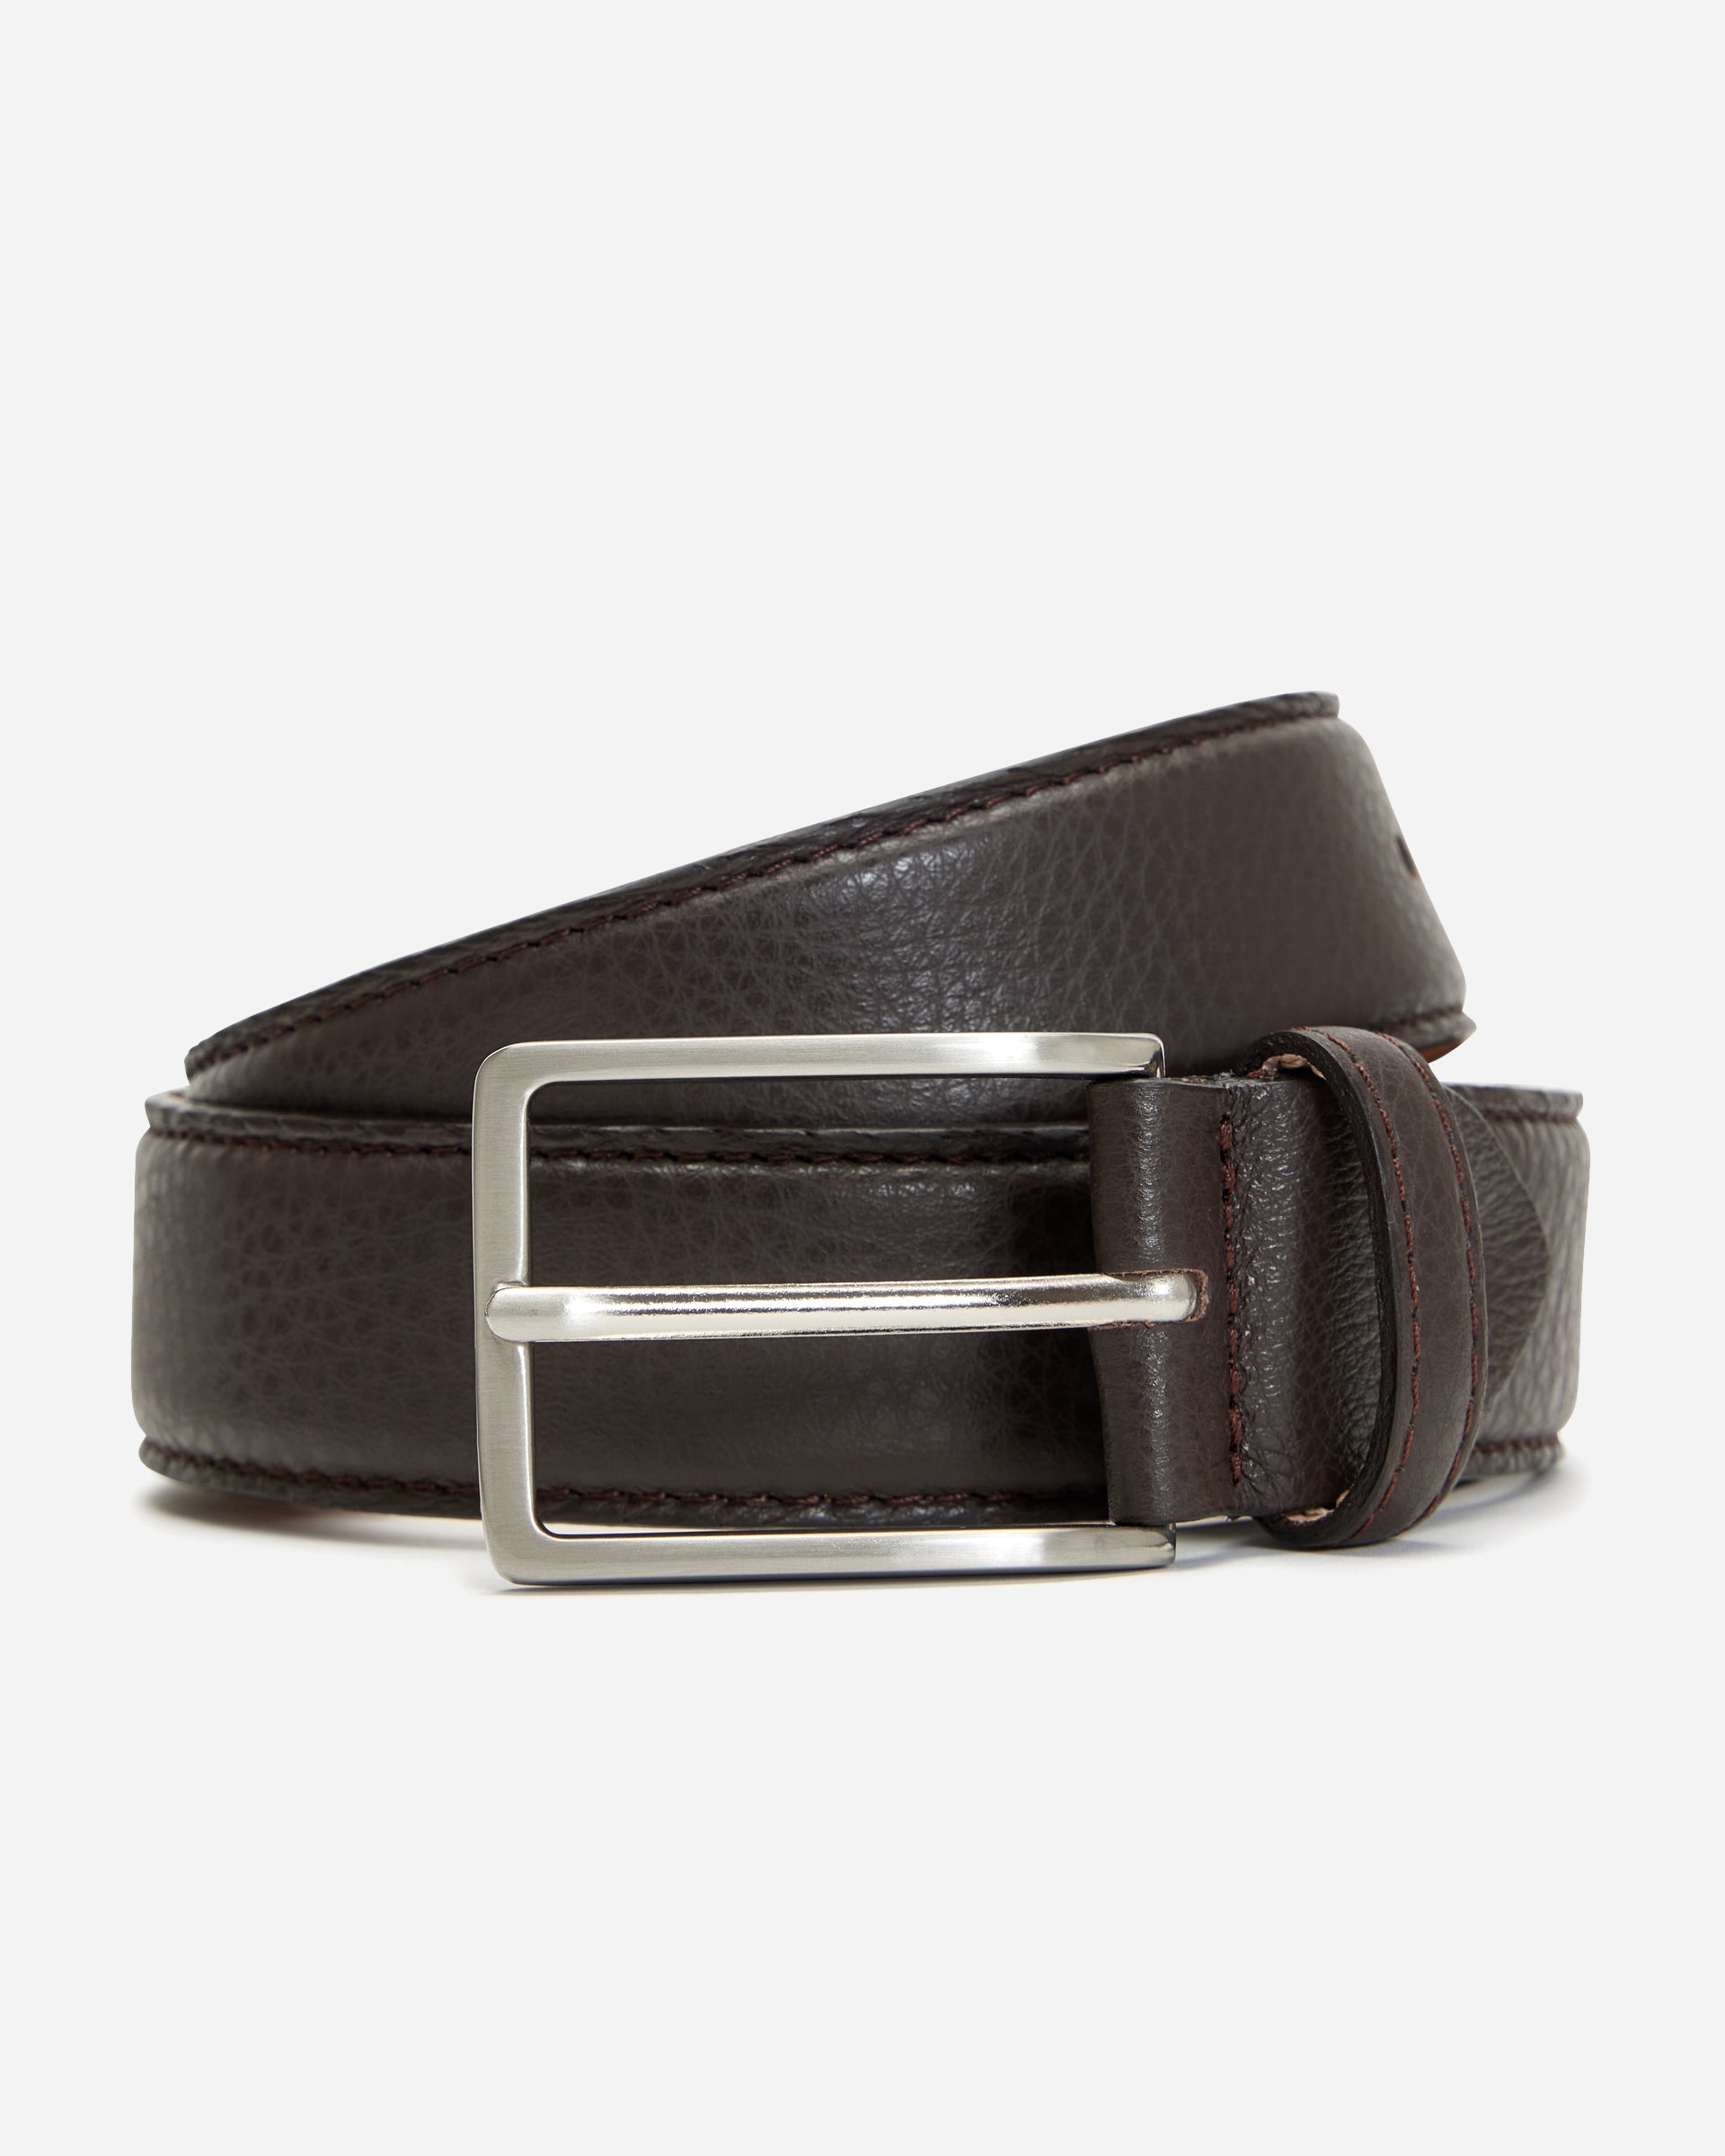 Penfold Belt - Men's Leather Belts at Menzclub